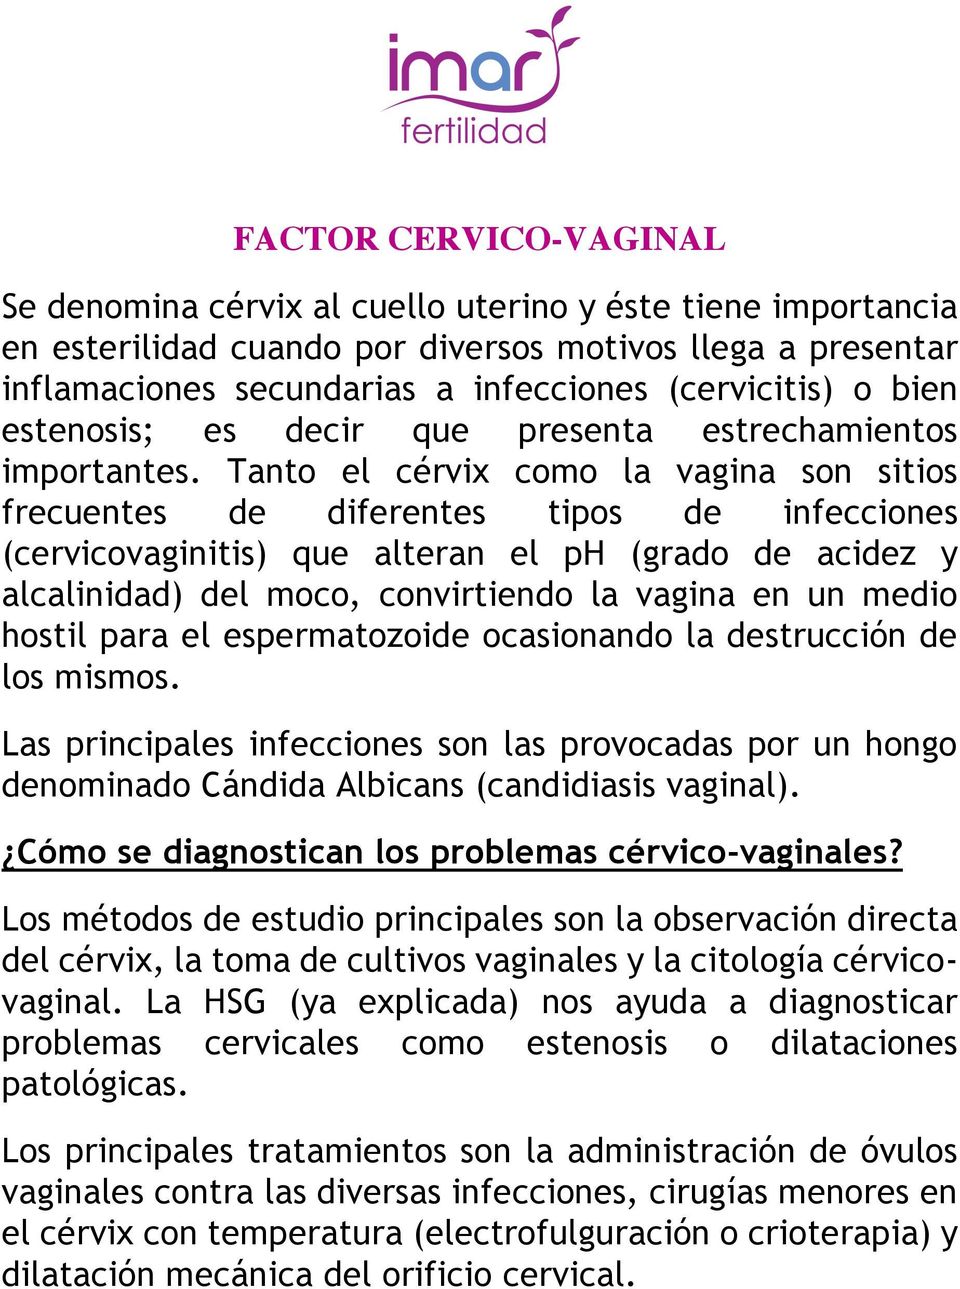 Tanto el cérvix como la vagina son sitios frecuentes de diferentes tipos de infecciones (cervicovaginitis) que alteran el ph (grado de acidez y alcalinidad) del moco, convirtiendo la vagina en un